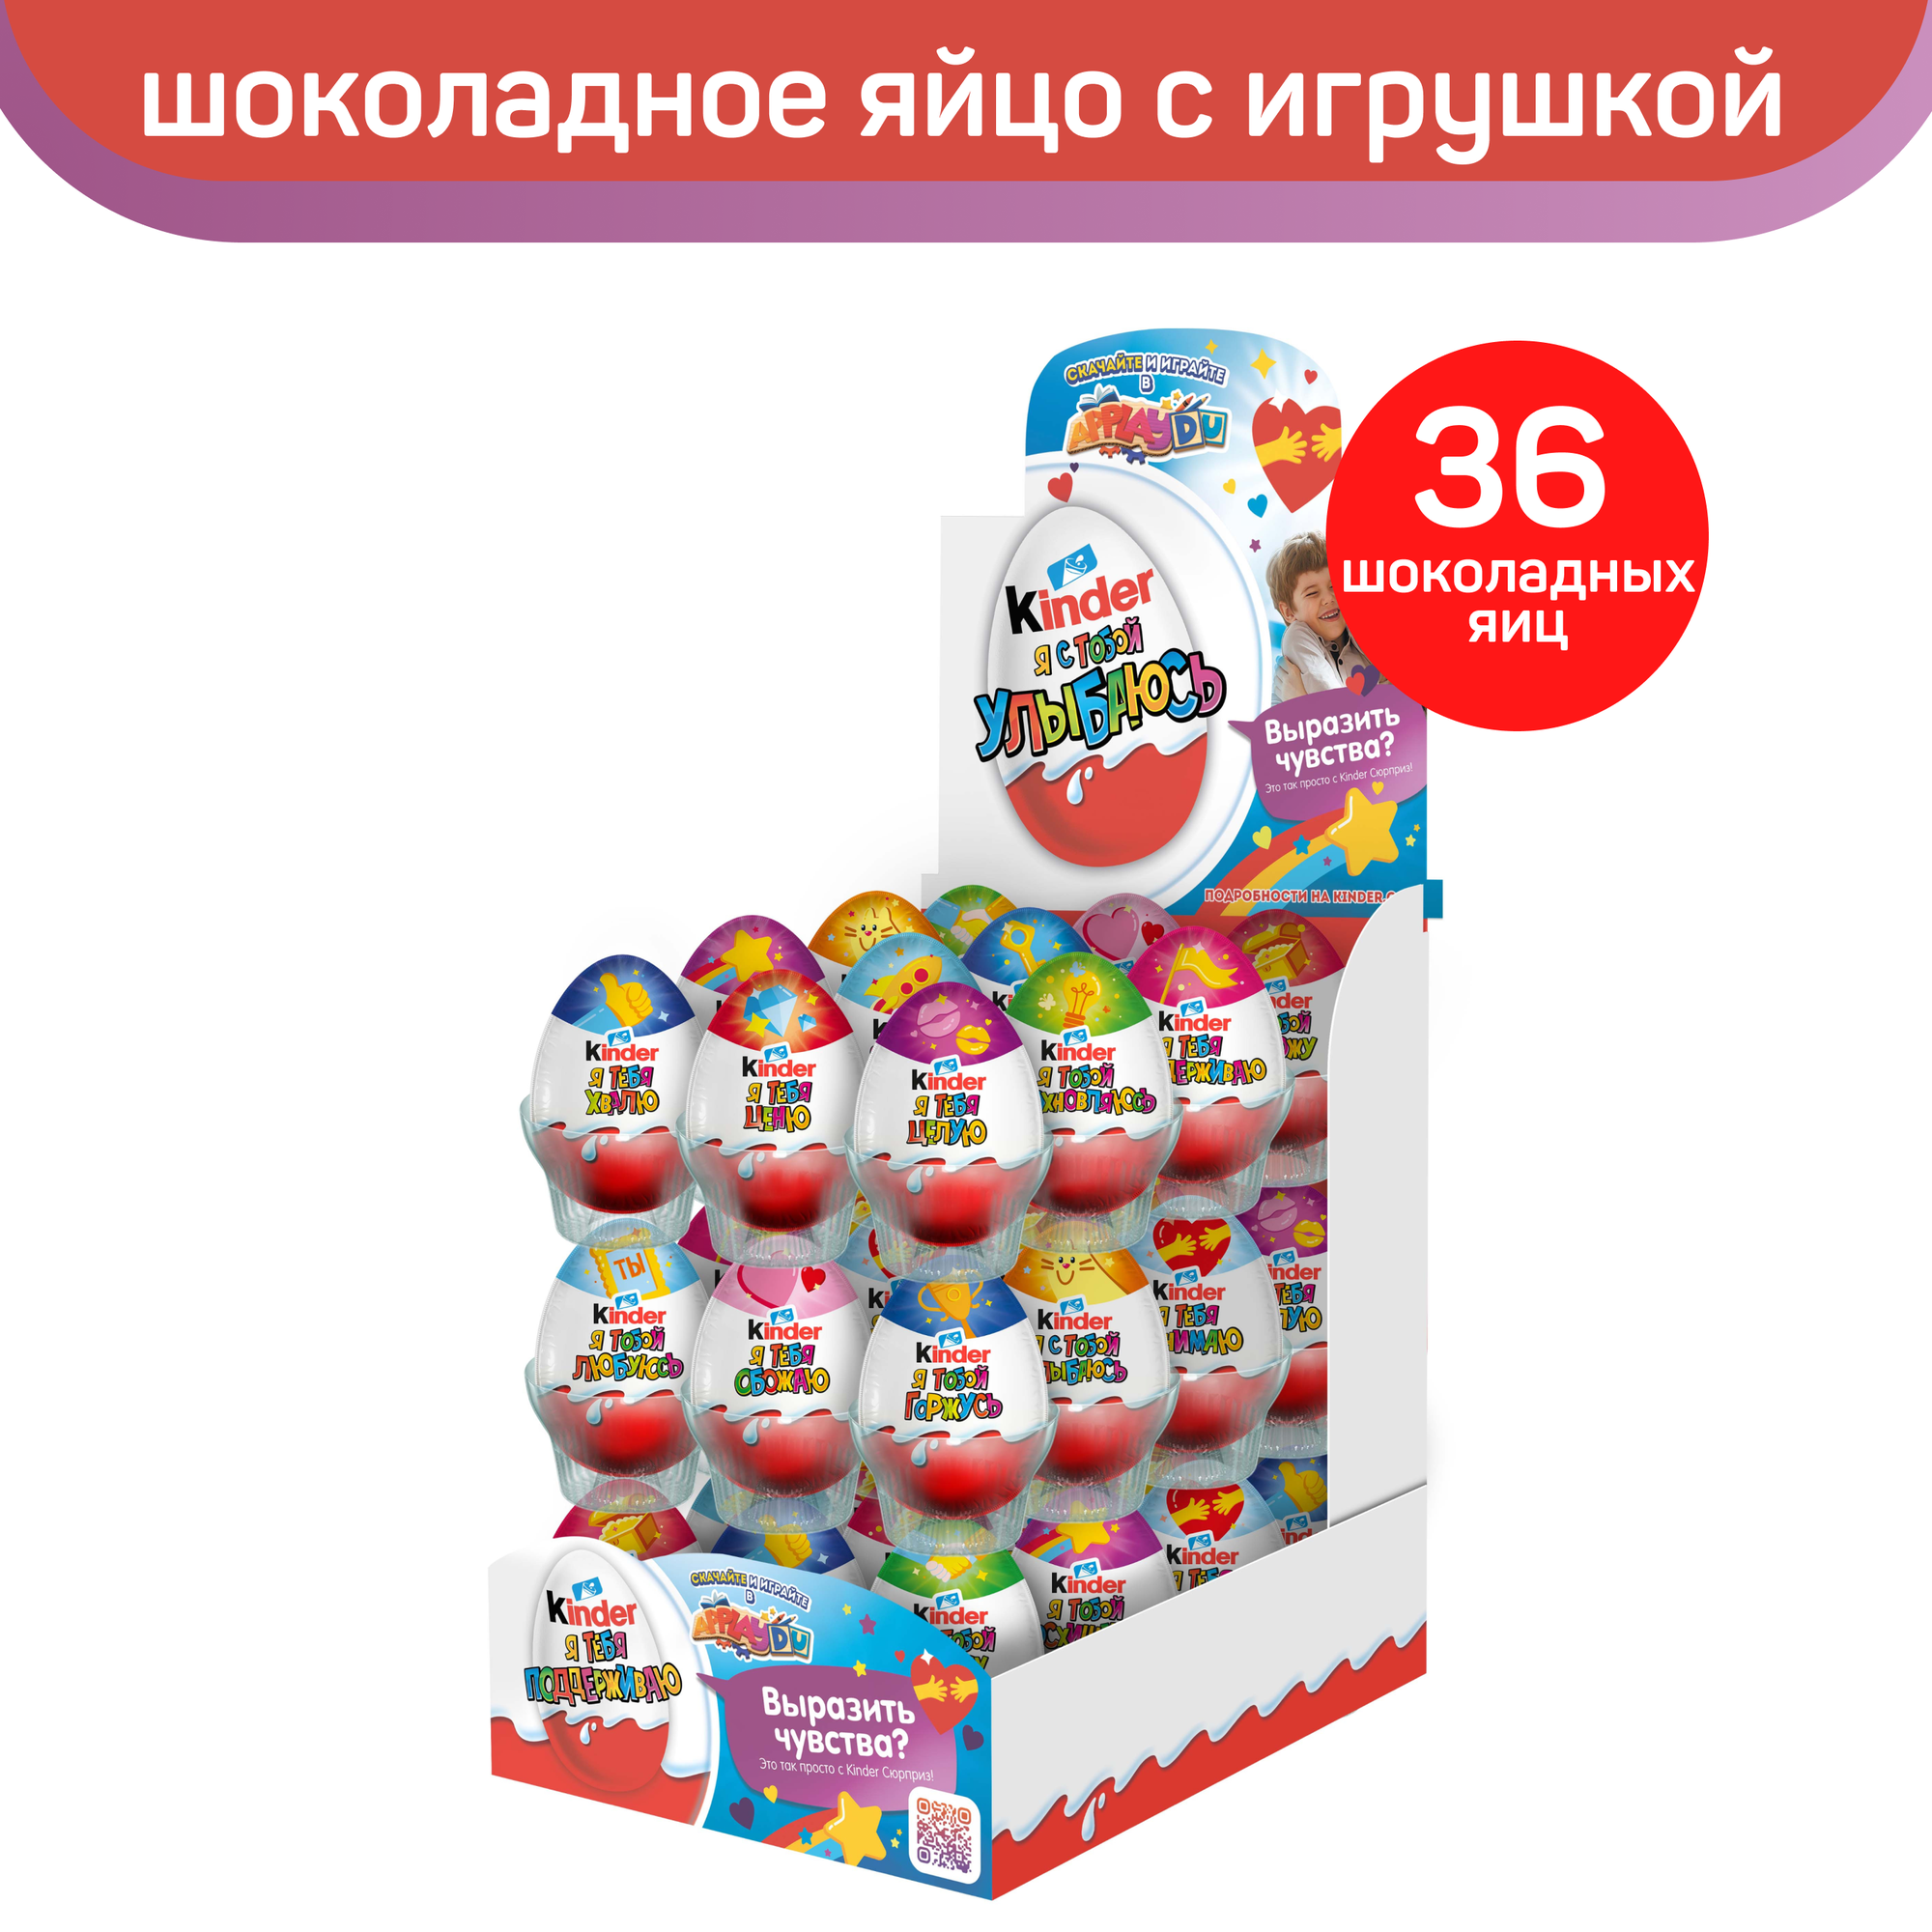 Яйцо Kinder Сюрприз из молочного шоколада, с игрушкой внутри, серия «Признания», 36 шт по 20 г